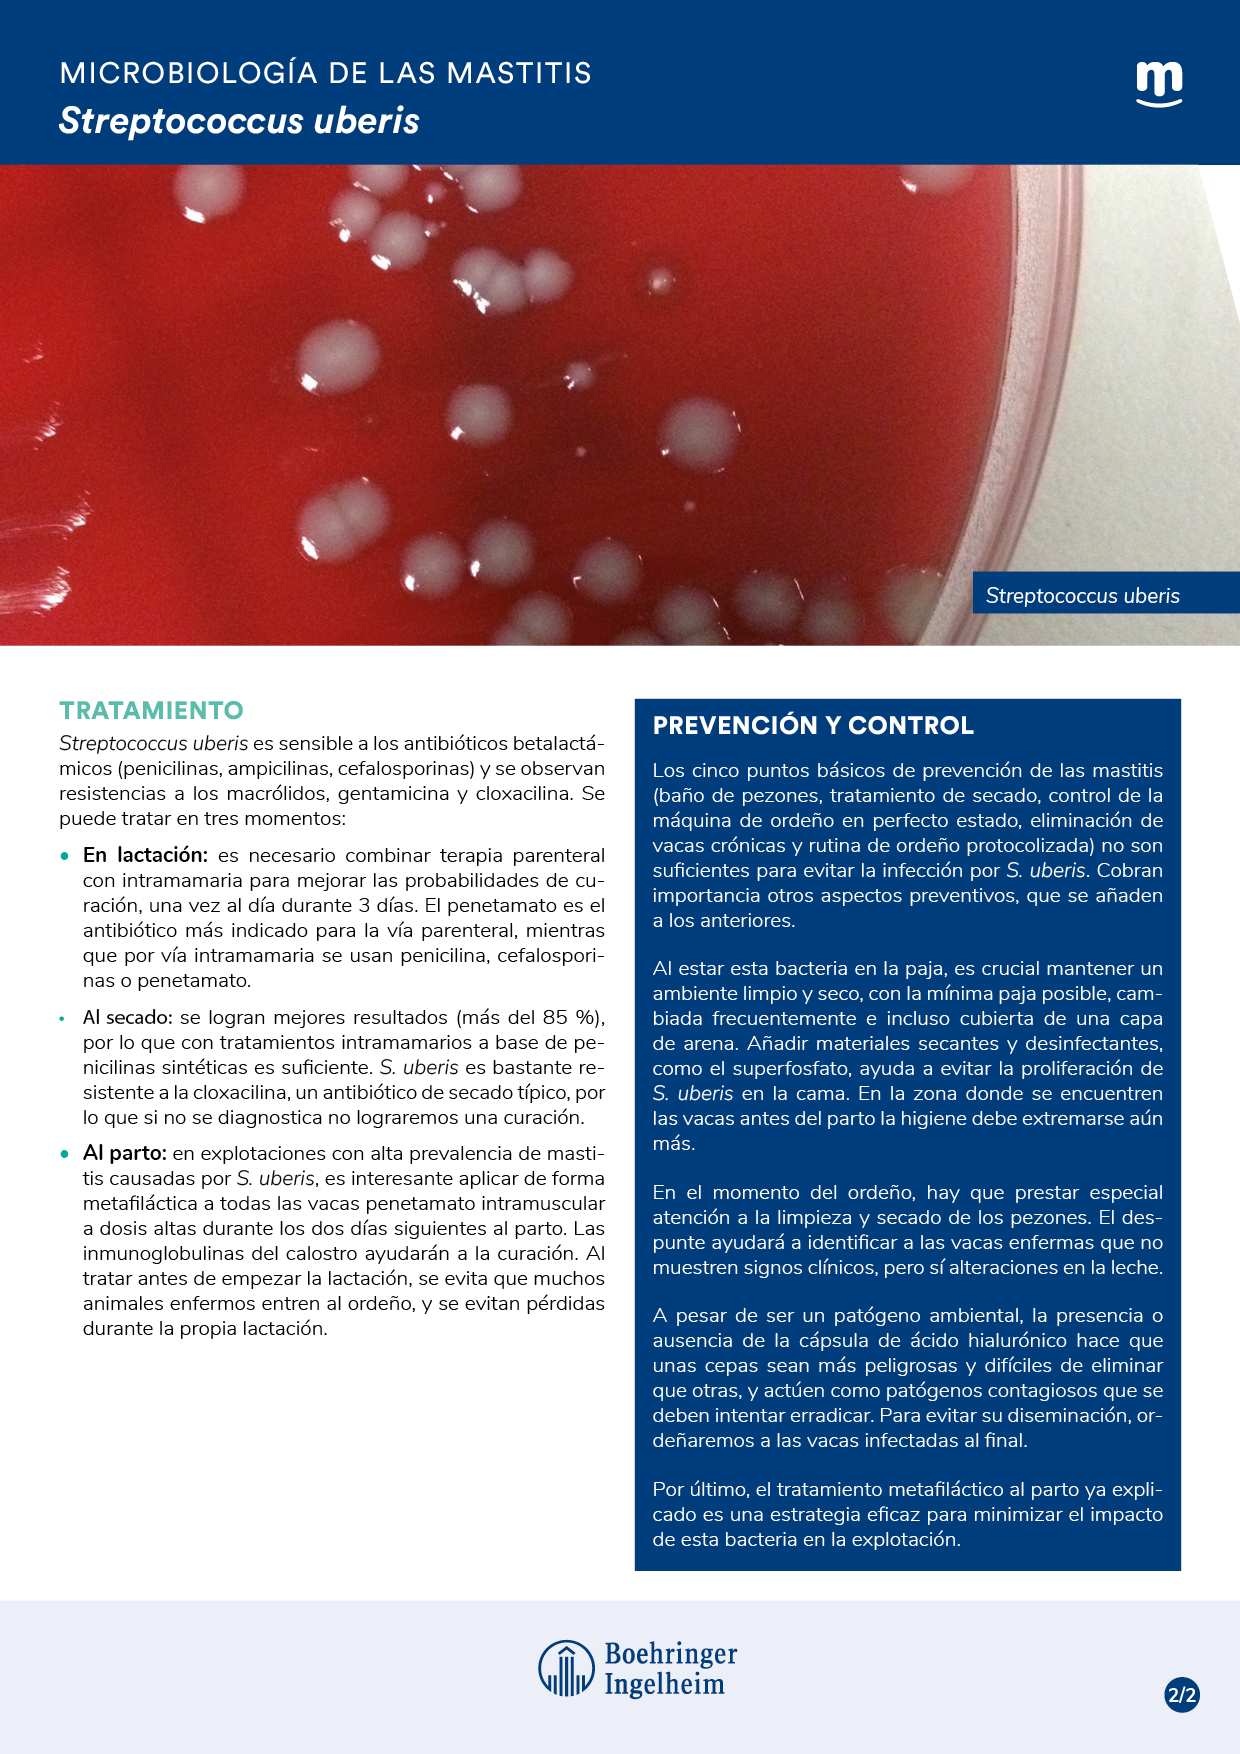 Microbiología de las mastitis: Streptococcus uberis